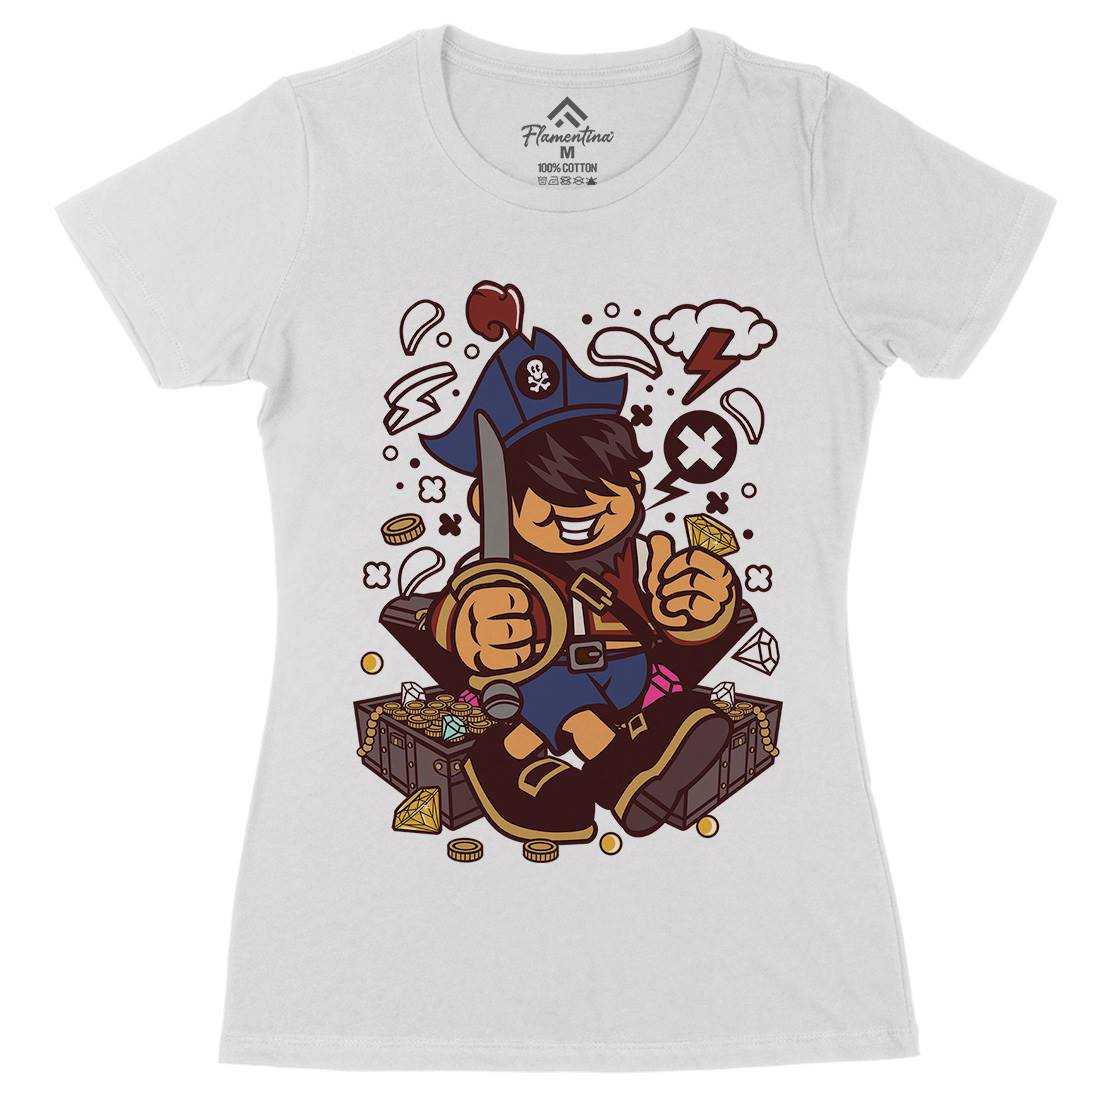 Pirate Kid Womens Organic Crew Neck T-Shirt Navy C191